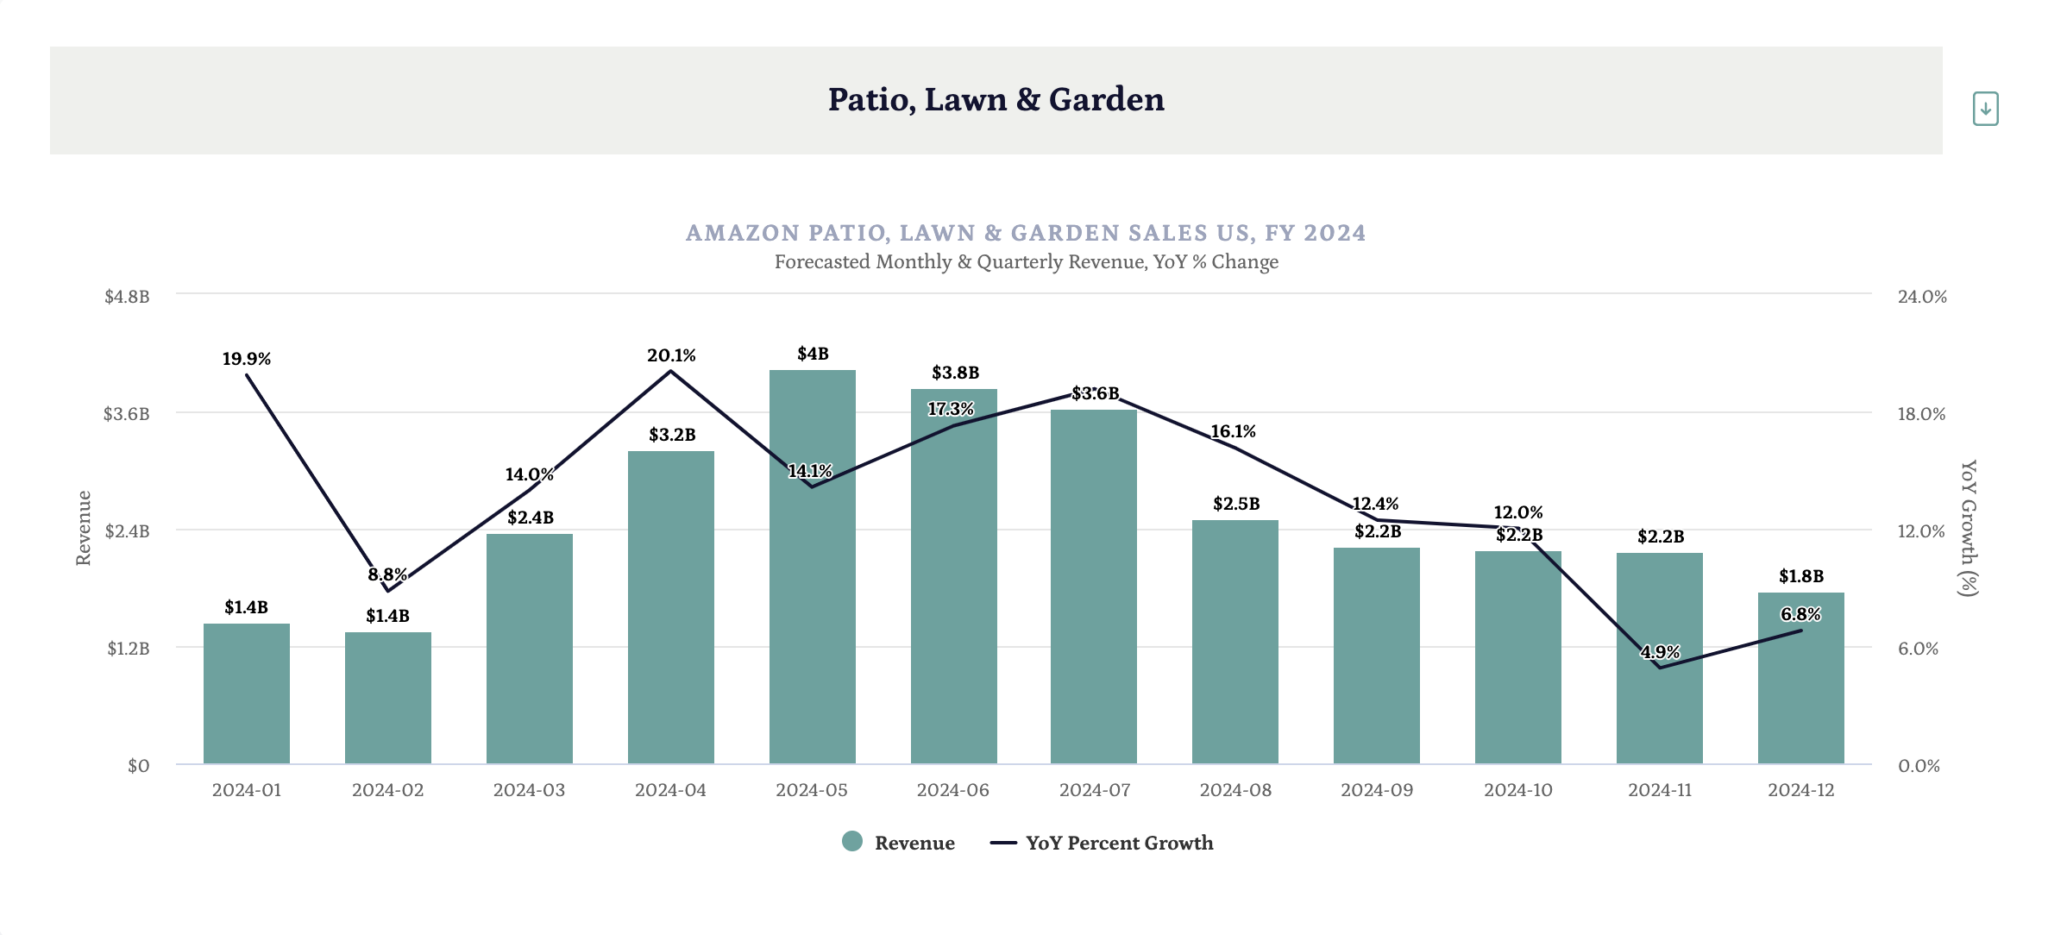 2024年亚马逊庭院园艺类目销售额预测：将达到307亿美元，增长14.4%